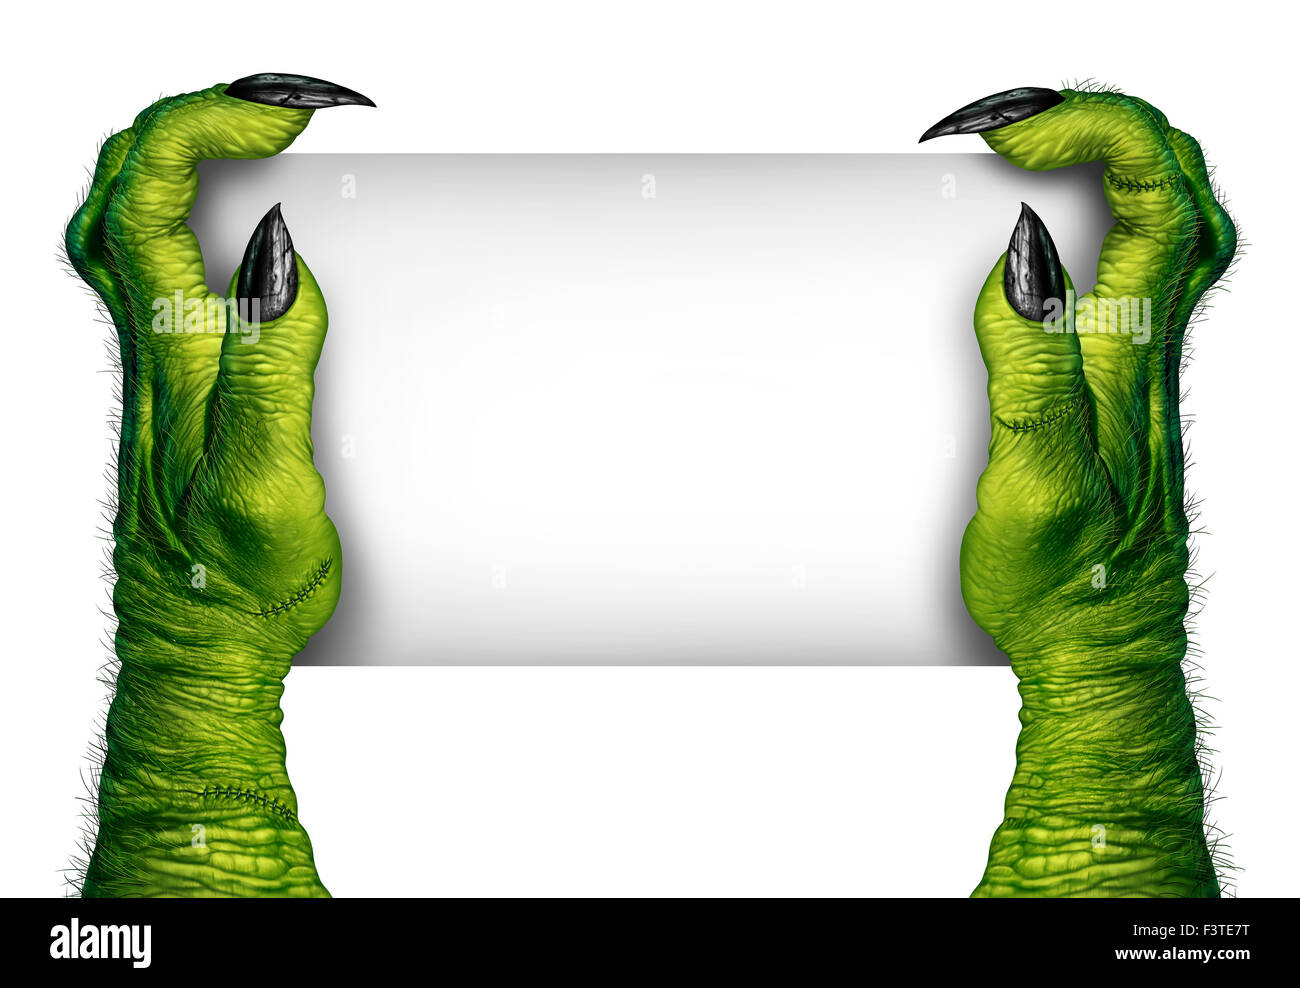 Zombie hands holding sign et monstre vert doigts avec carte vierge comme un symbole effrayant ou halloween creepy avec texture peau ridée bras effrayant et stitches isolé sur un fond blanc. Banque D'Images